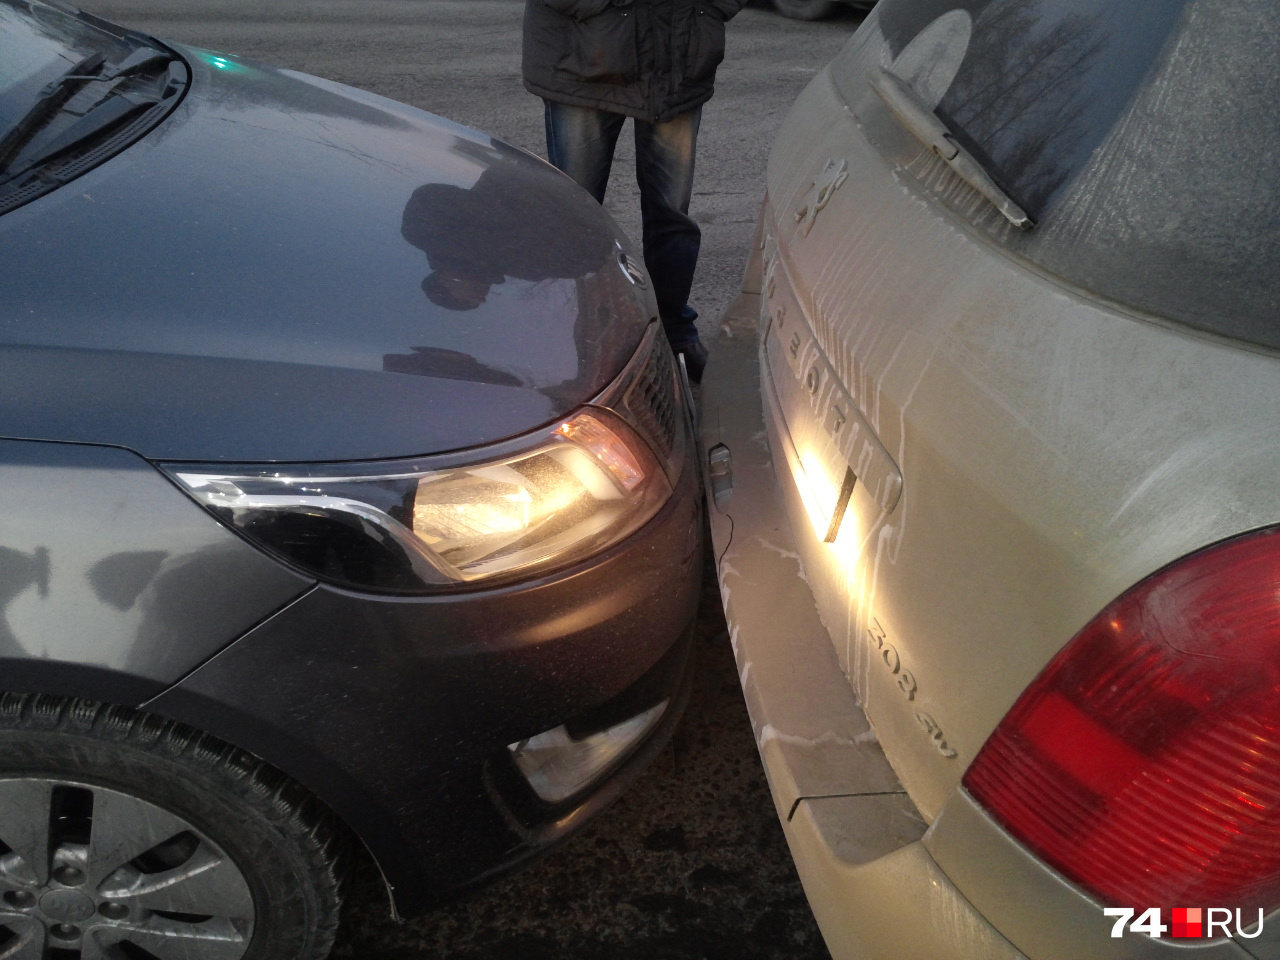 Сзади у Peugeot пострадал бампер